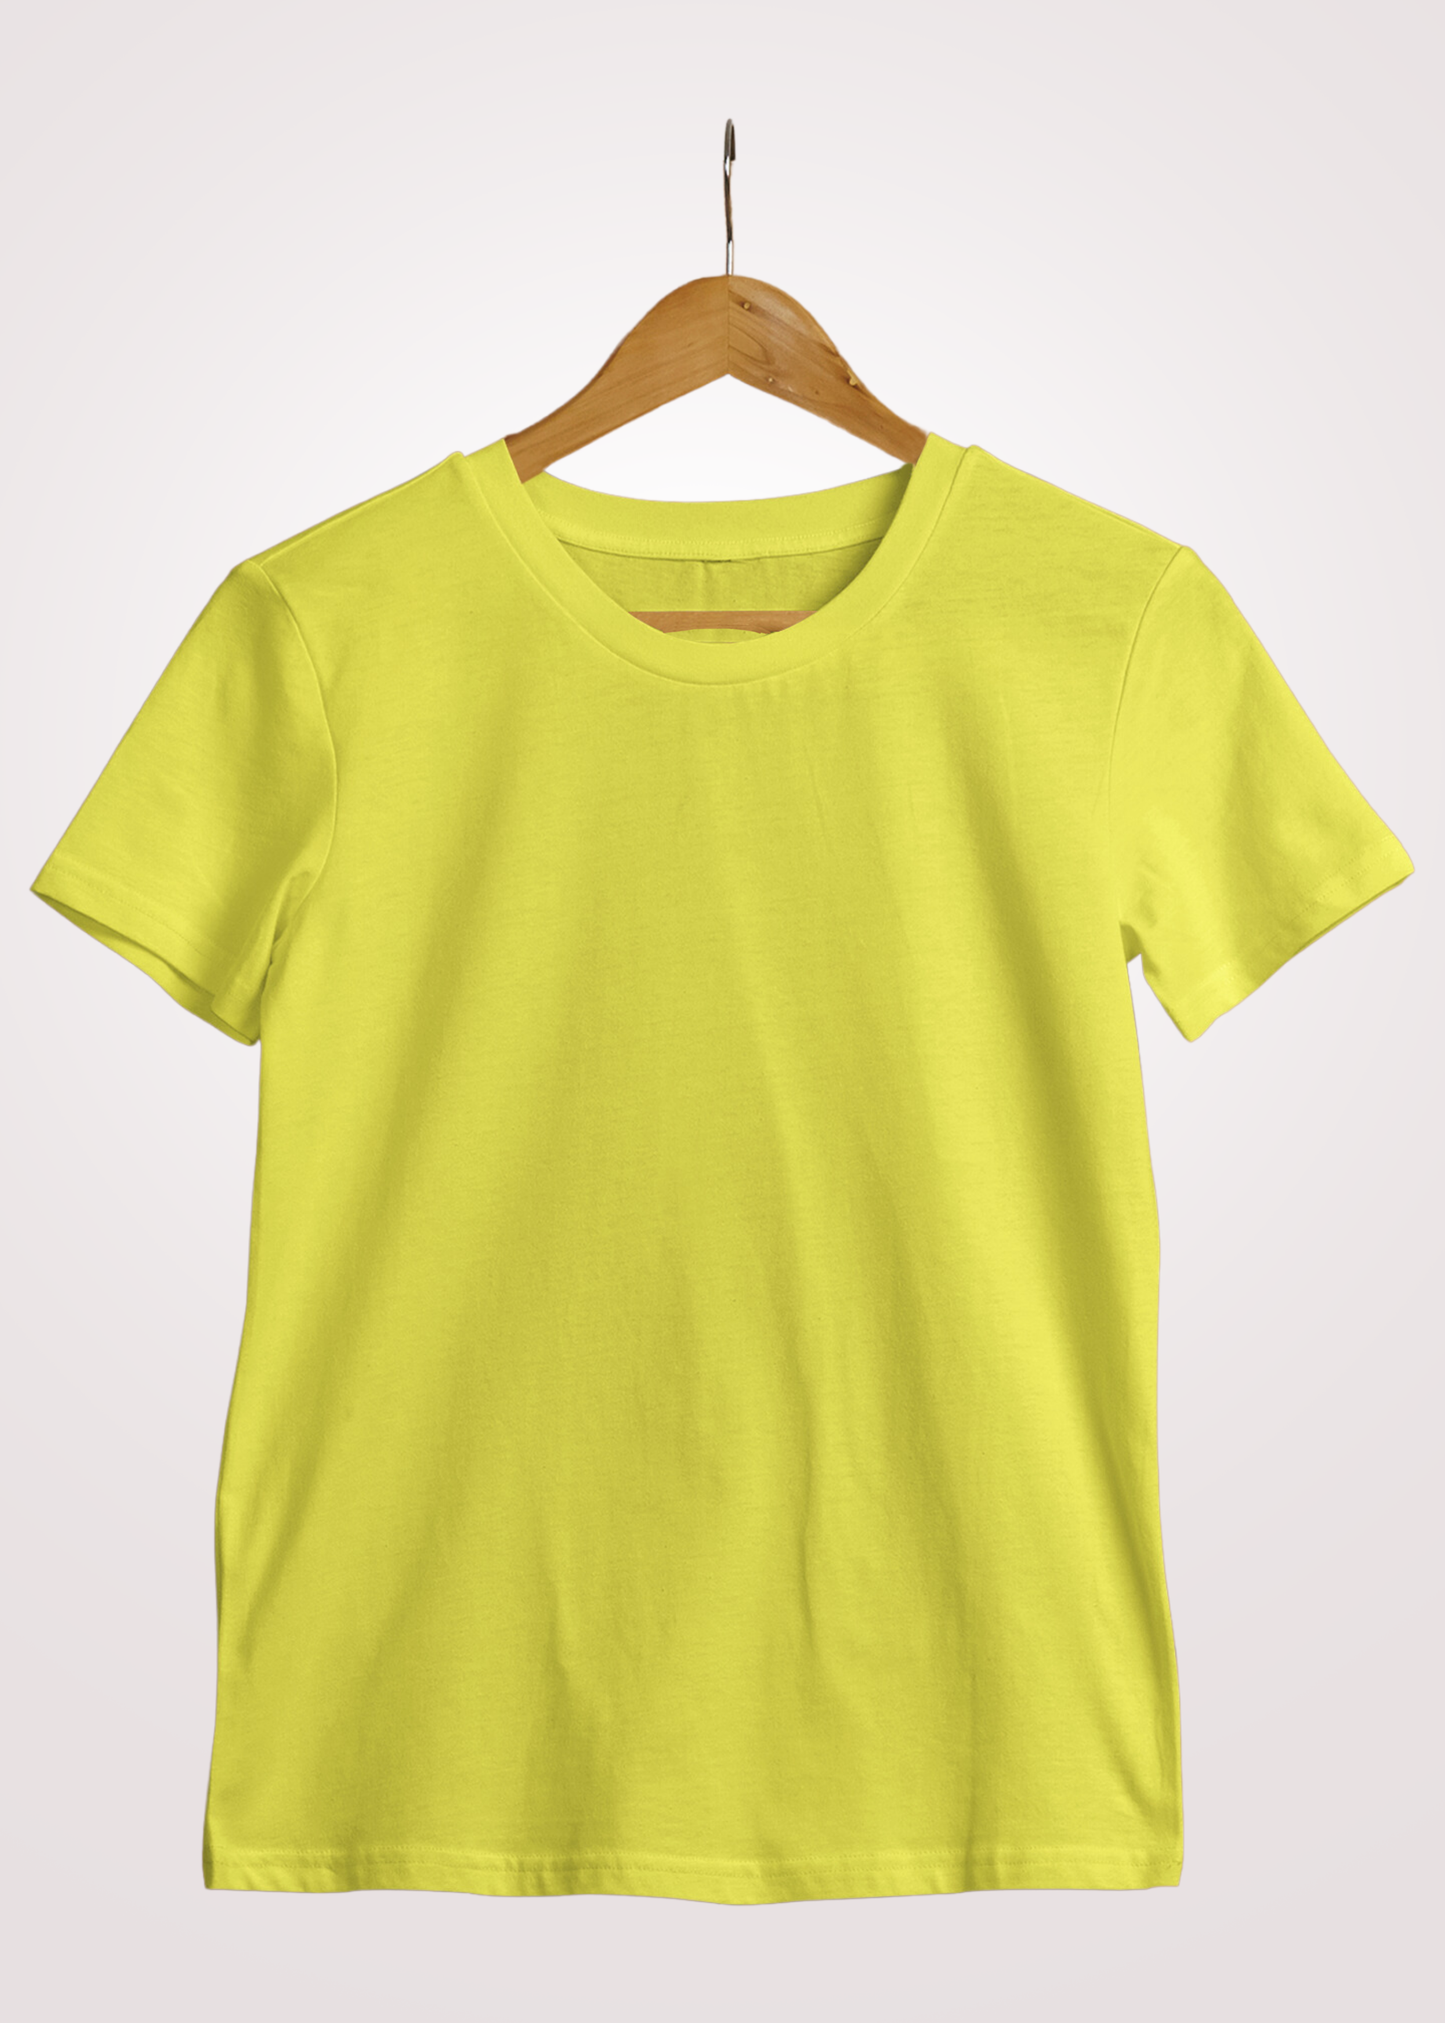 Lemon Yellow Plain Tshirt